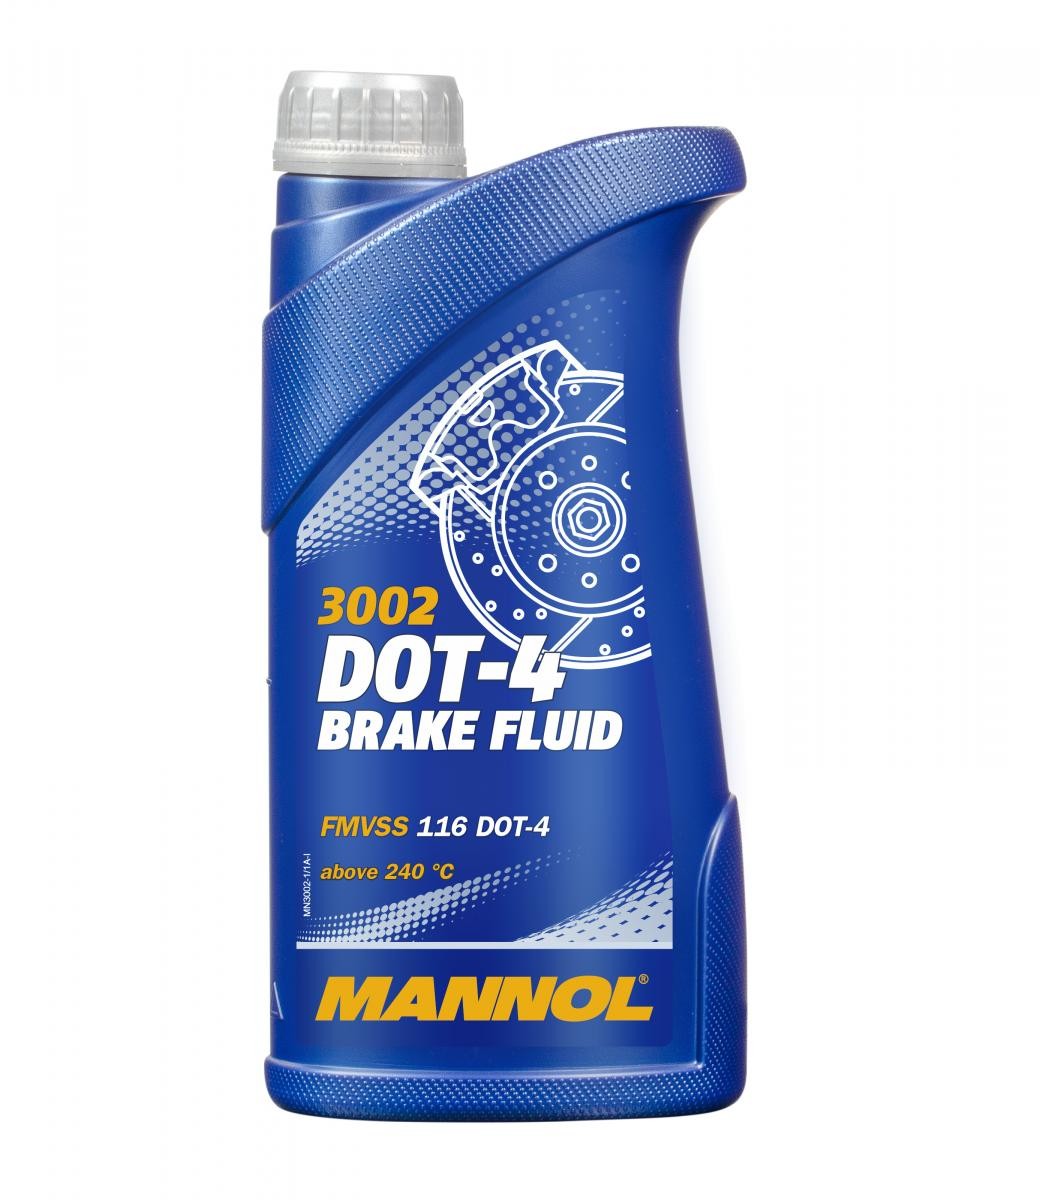 PEUGEOT SUM-UP Bremsflüssigkeit 1l MANNOL DOT-4 BRAKE FLUID MN3002-1